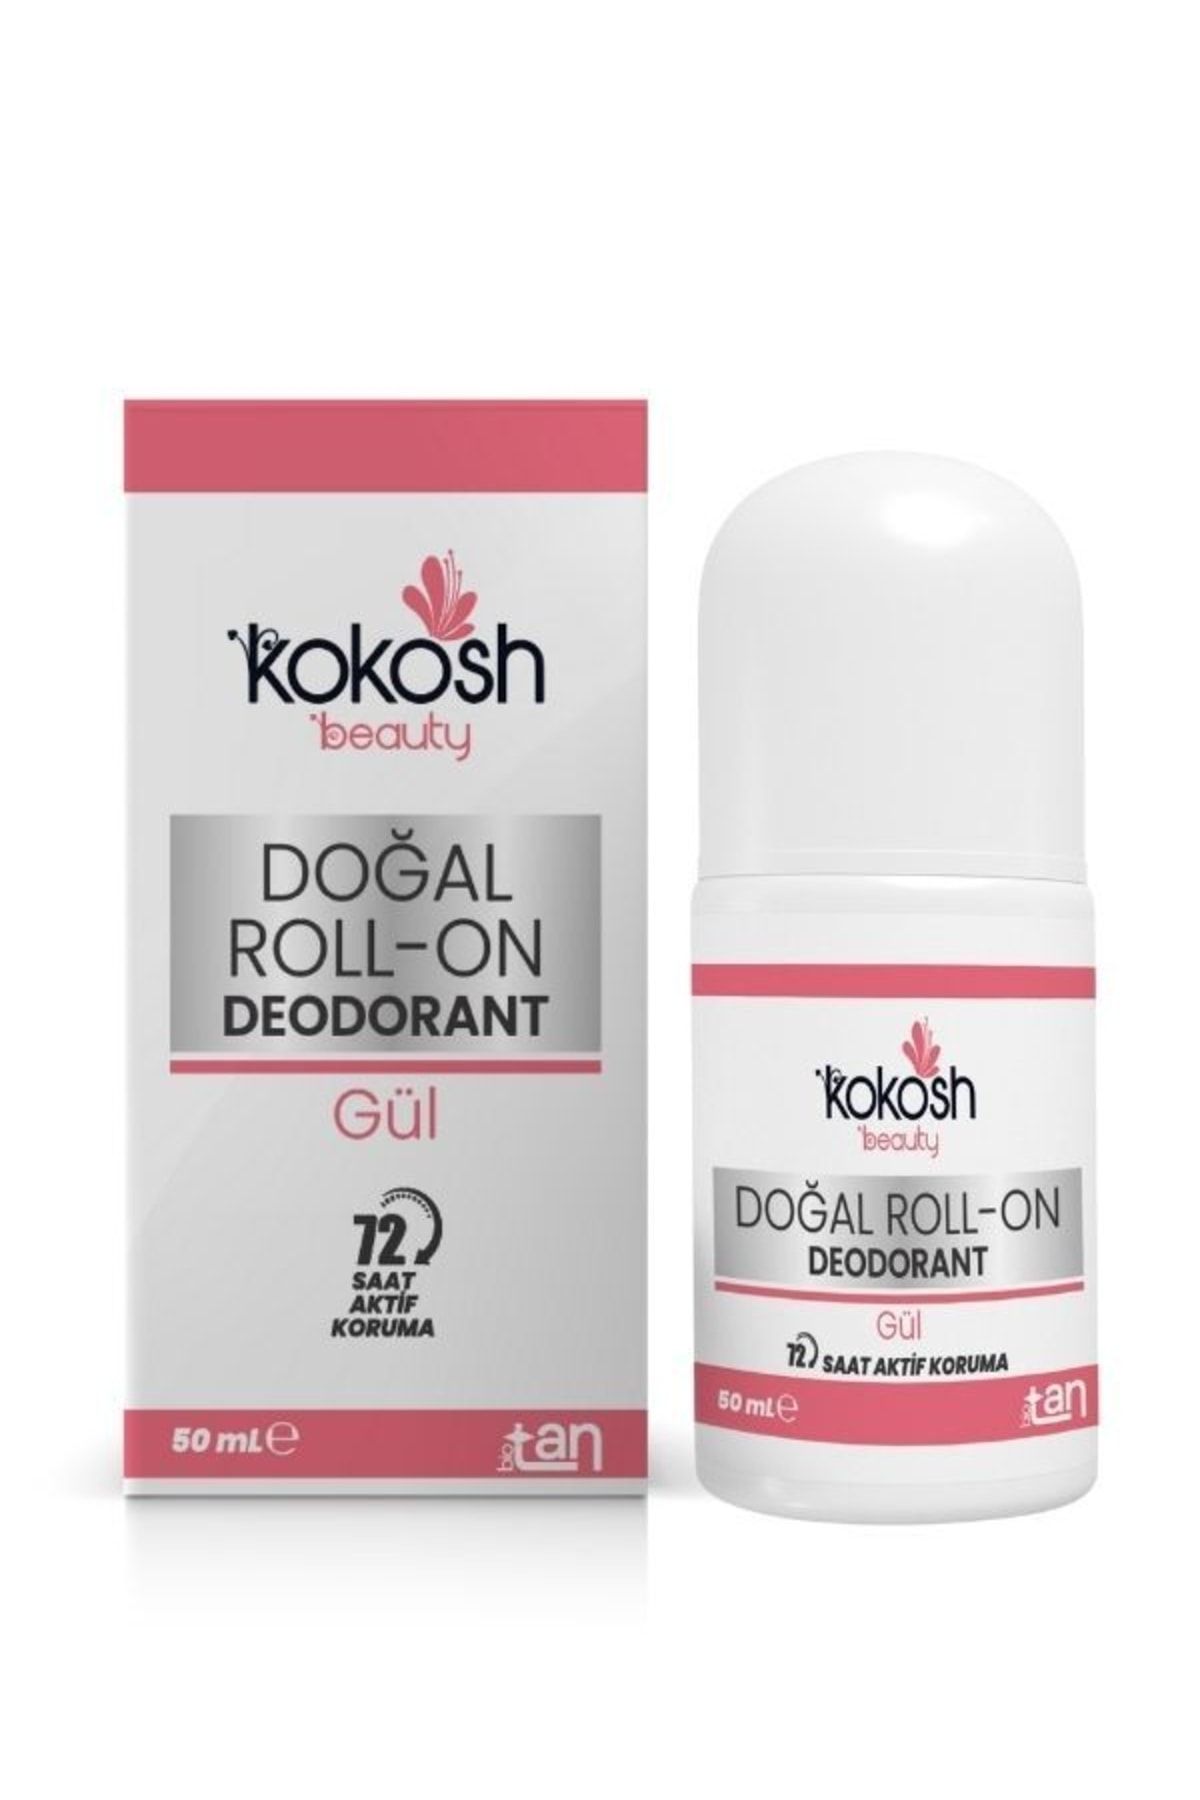 KokoshAbla Doğal Bakım Ürünleri Doğal Roll-on Deodorant & Doğal Deodorant (GÜL KOKULU)